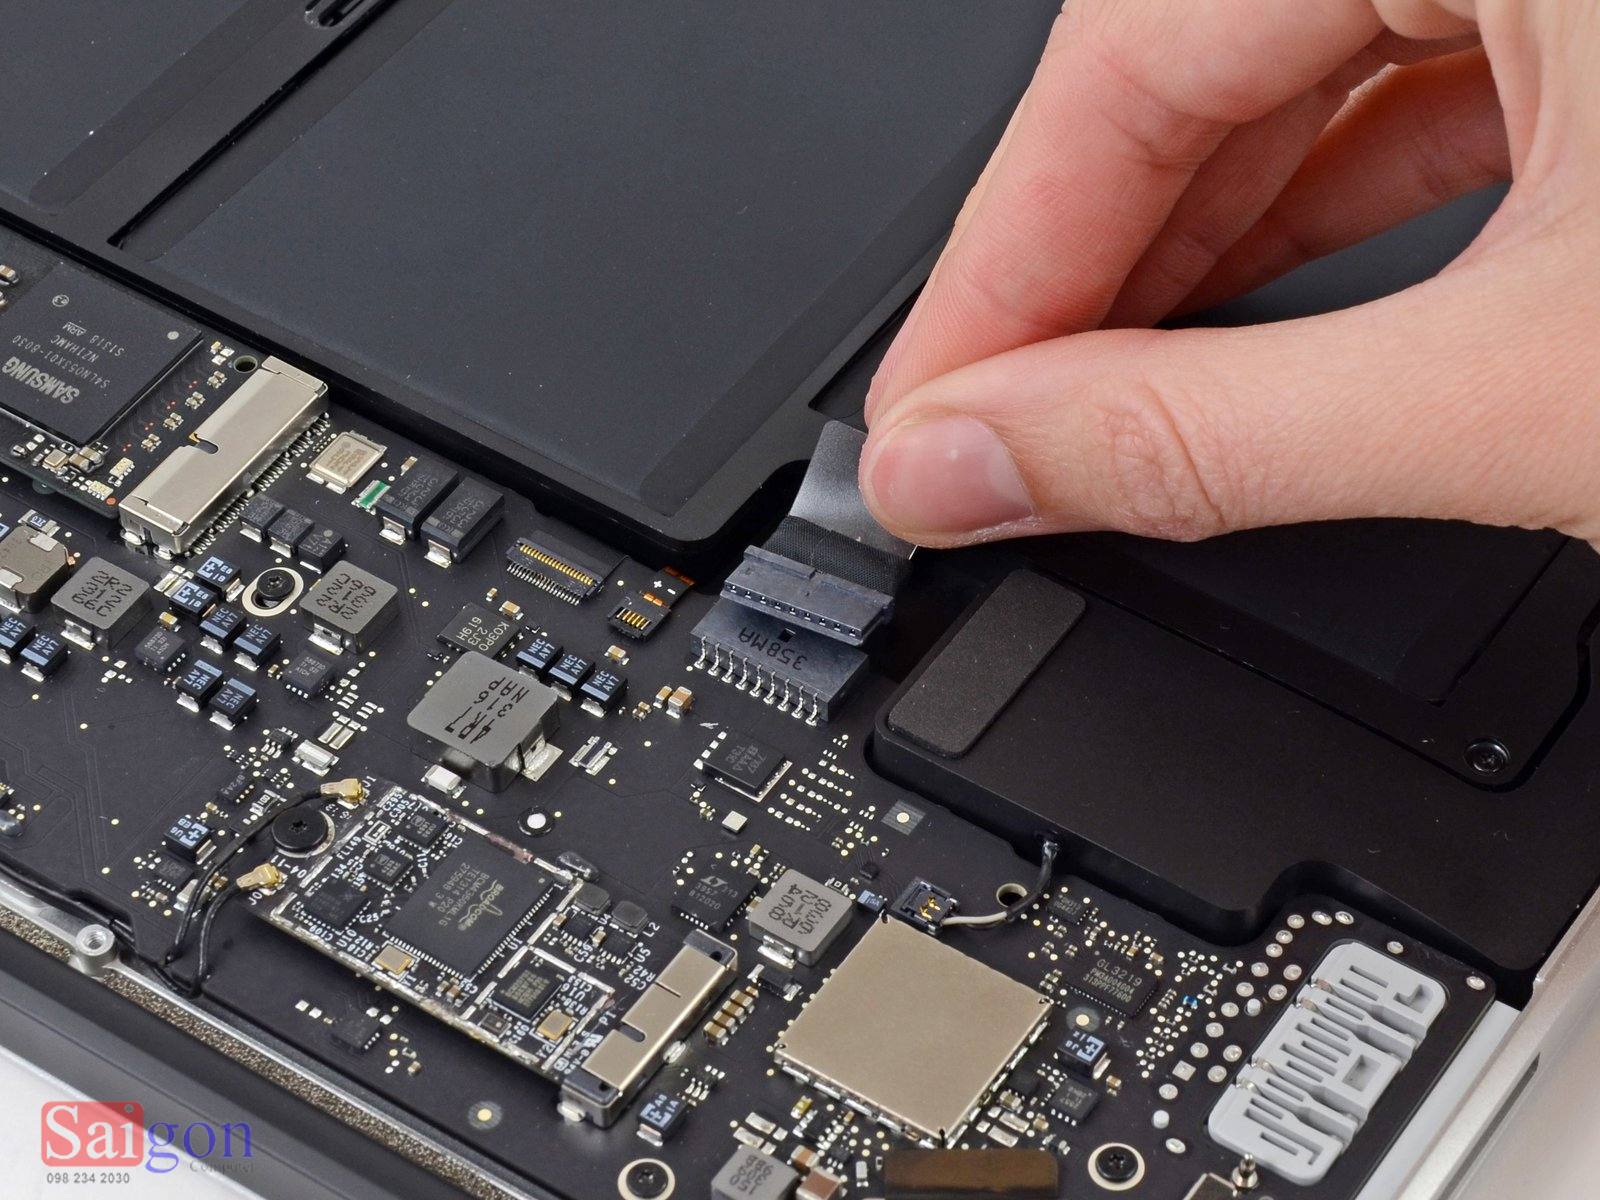 Hướng dẫn thay pin Macbook Air 13 inch 2014 tại nhà